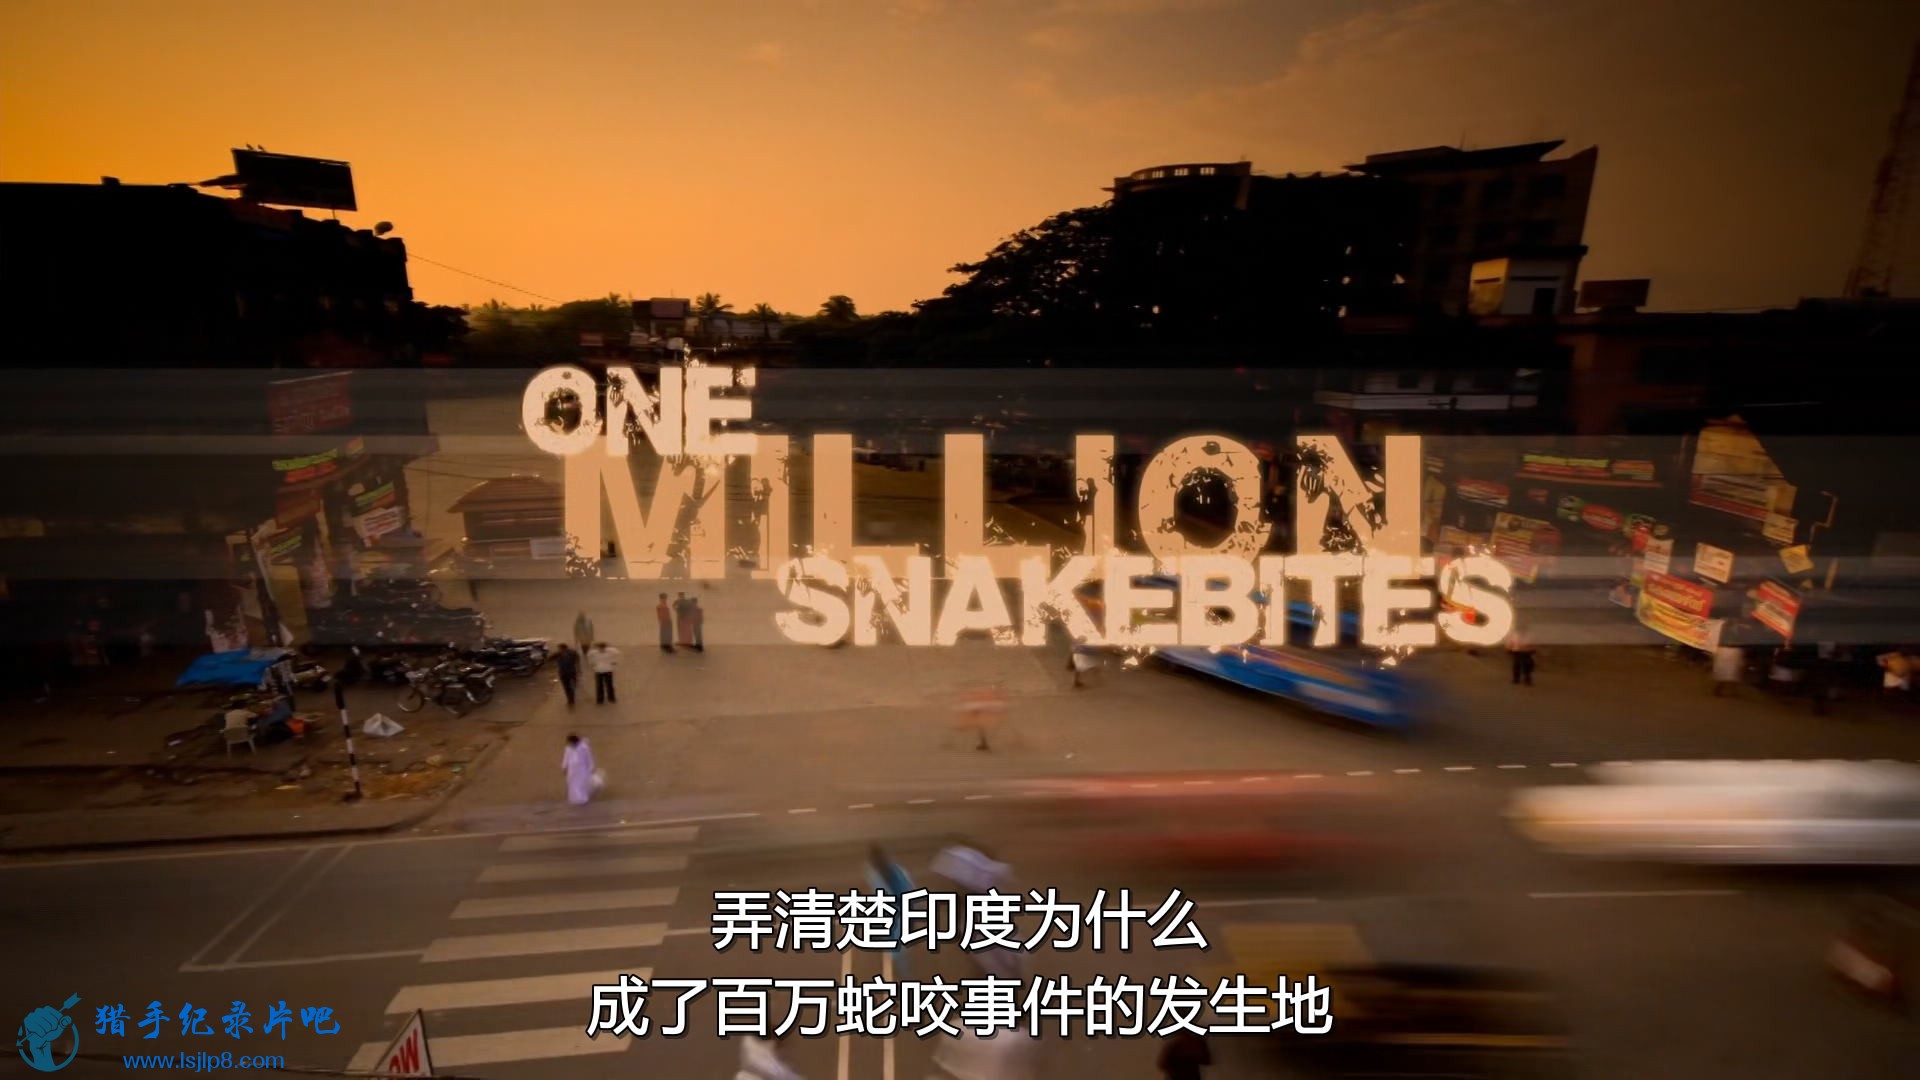 BBC.Natural.World.2011.One.Million.Snake.Bites.1080p.HDTV.x265.AAC.MVGroup.org.jpg